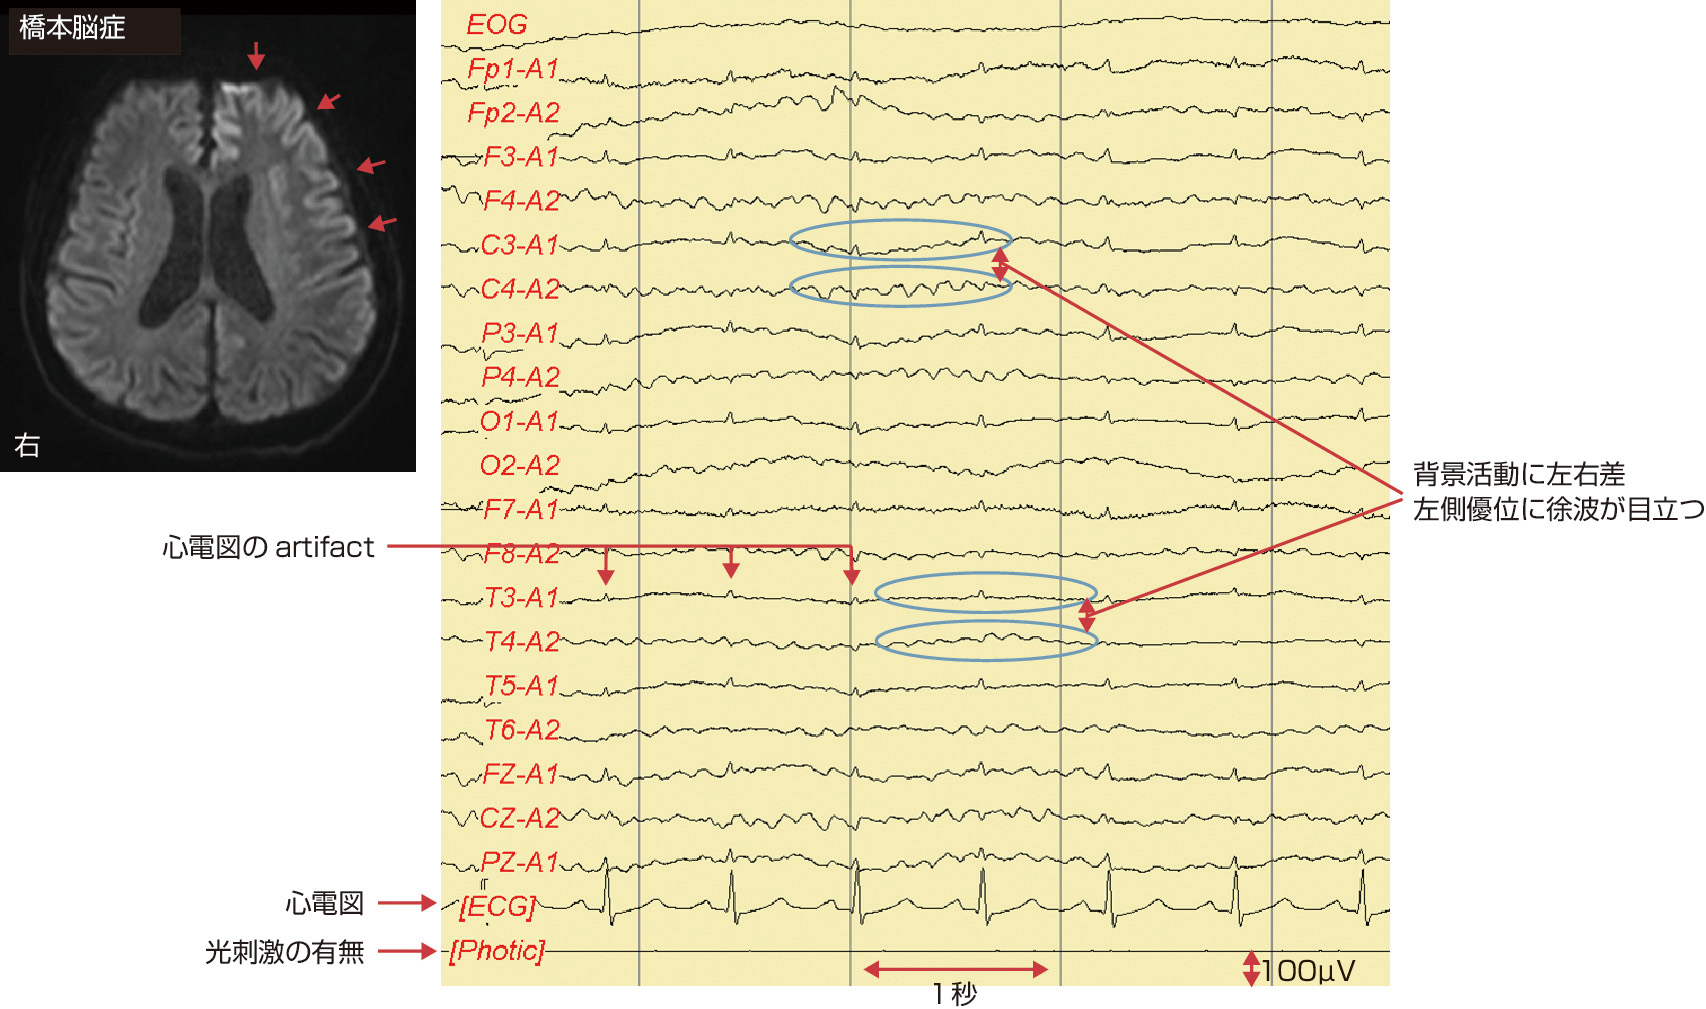 図1　脳MRI拡散強調画像と閉眼覚醒時の脳波． 51歳男性，橋本脳症の患者．脳MRI画像拡散強調画像では，左側の大脳皮質に前頭葉を中心に広く高信号領域を認めている (赤色矢印)．脳波では障害側である左半球の基礎波が右側に比較して徐波が目立つ．